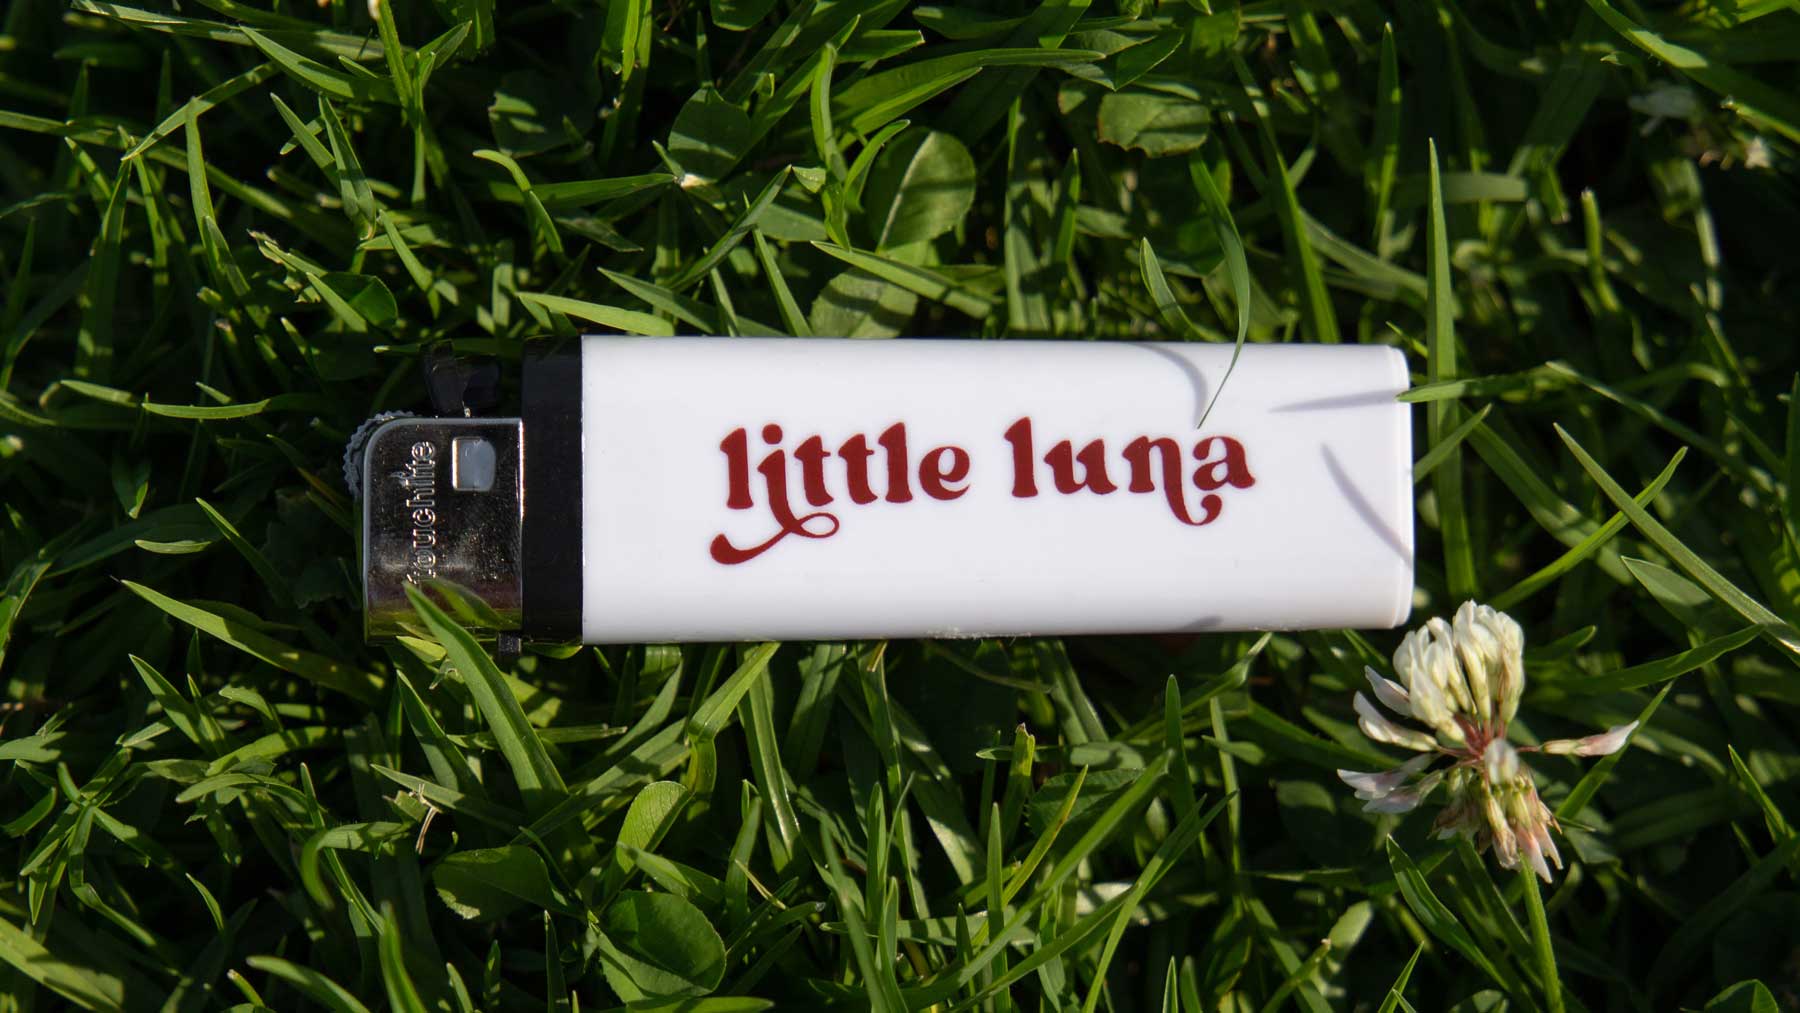 little luna lighter